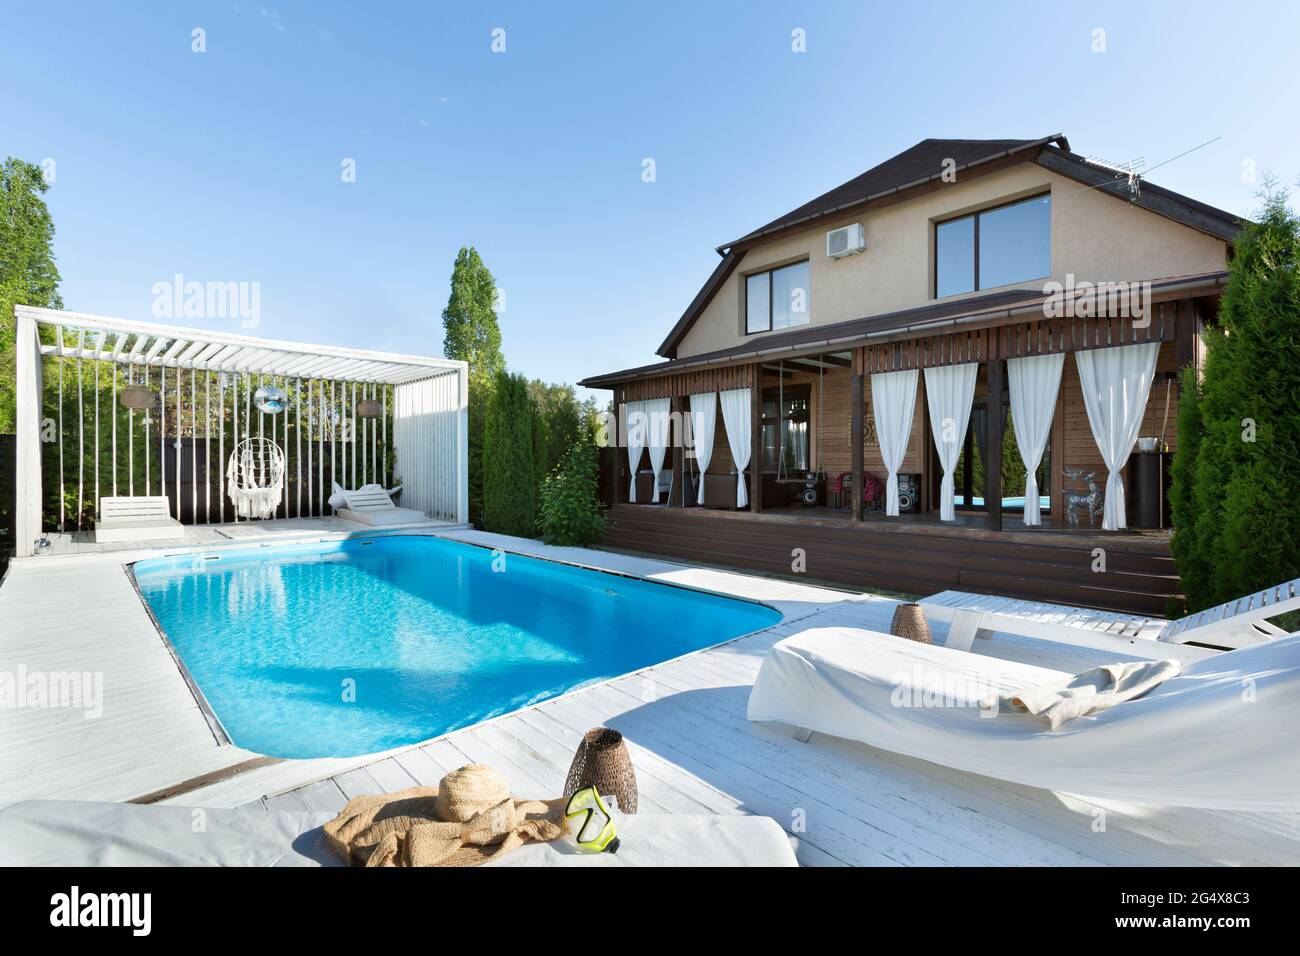 Swimmingpool im Hinterhof des Hauses während des sonnigen Tages Stockfoto